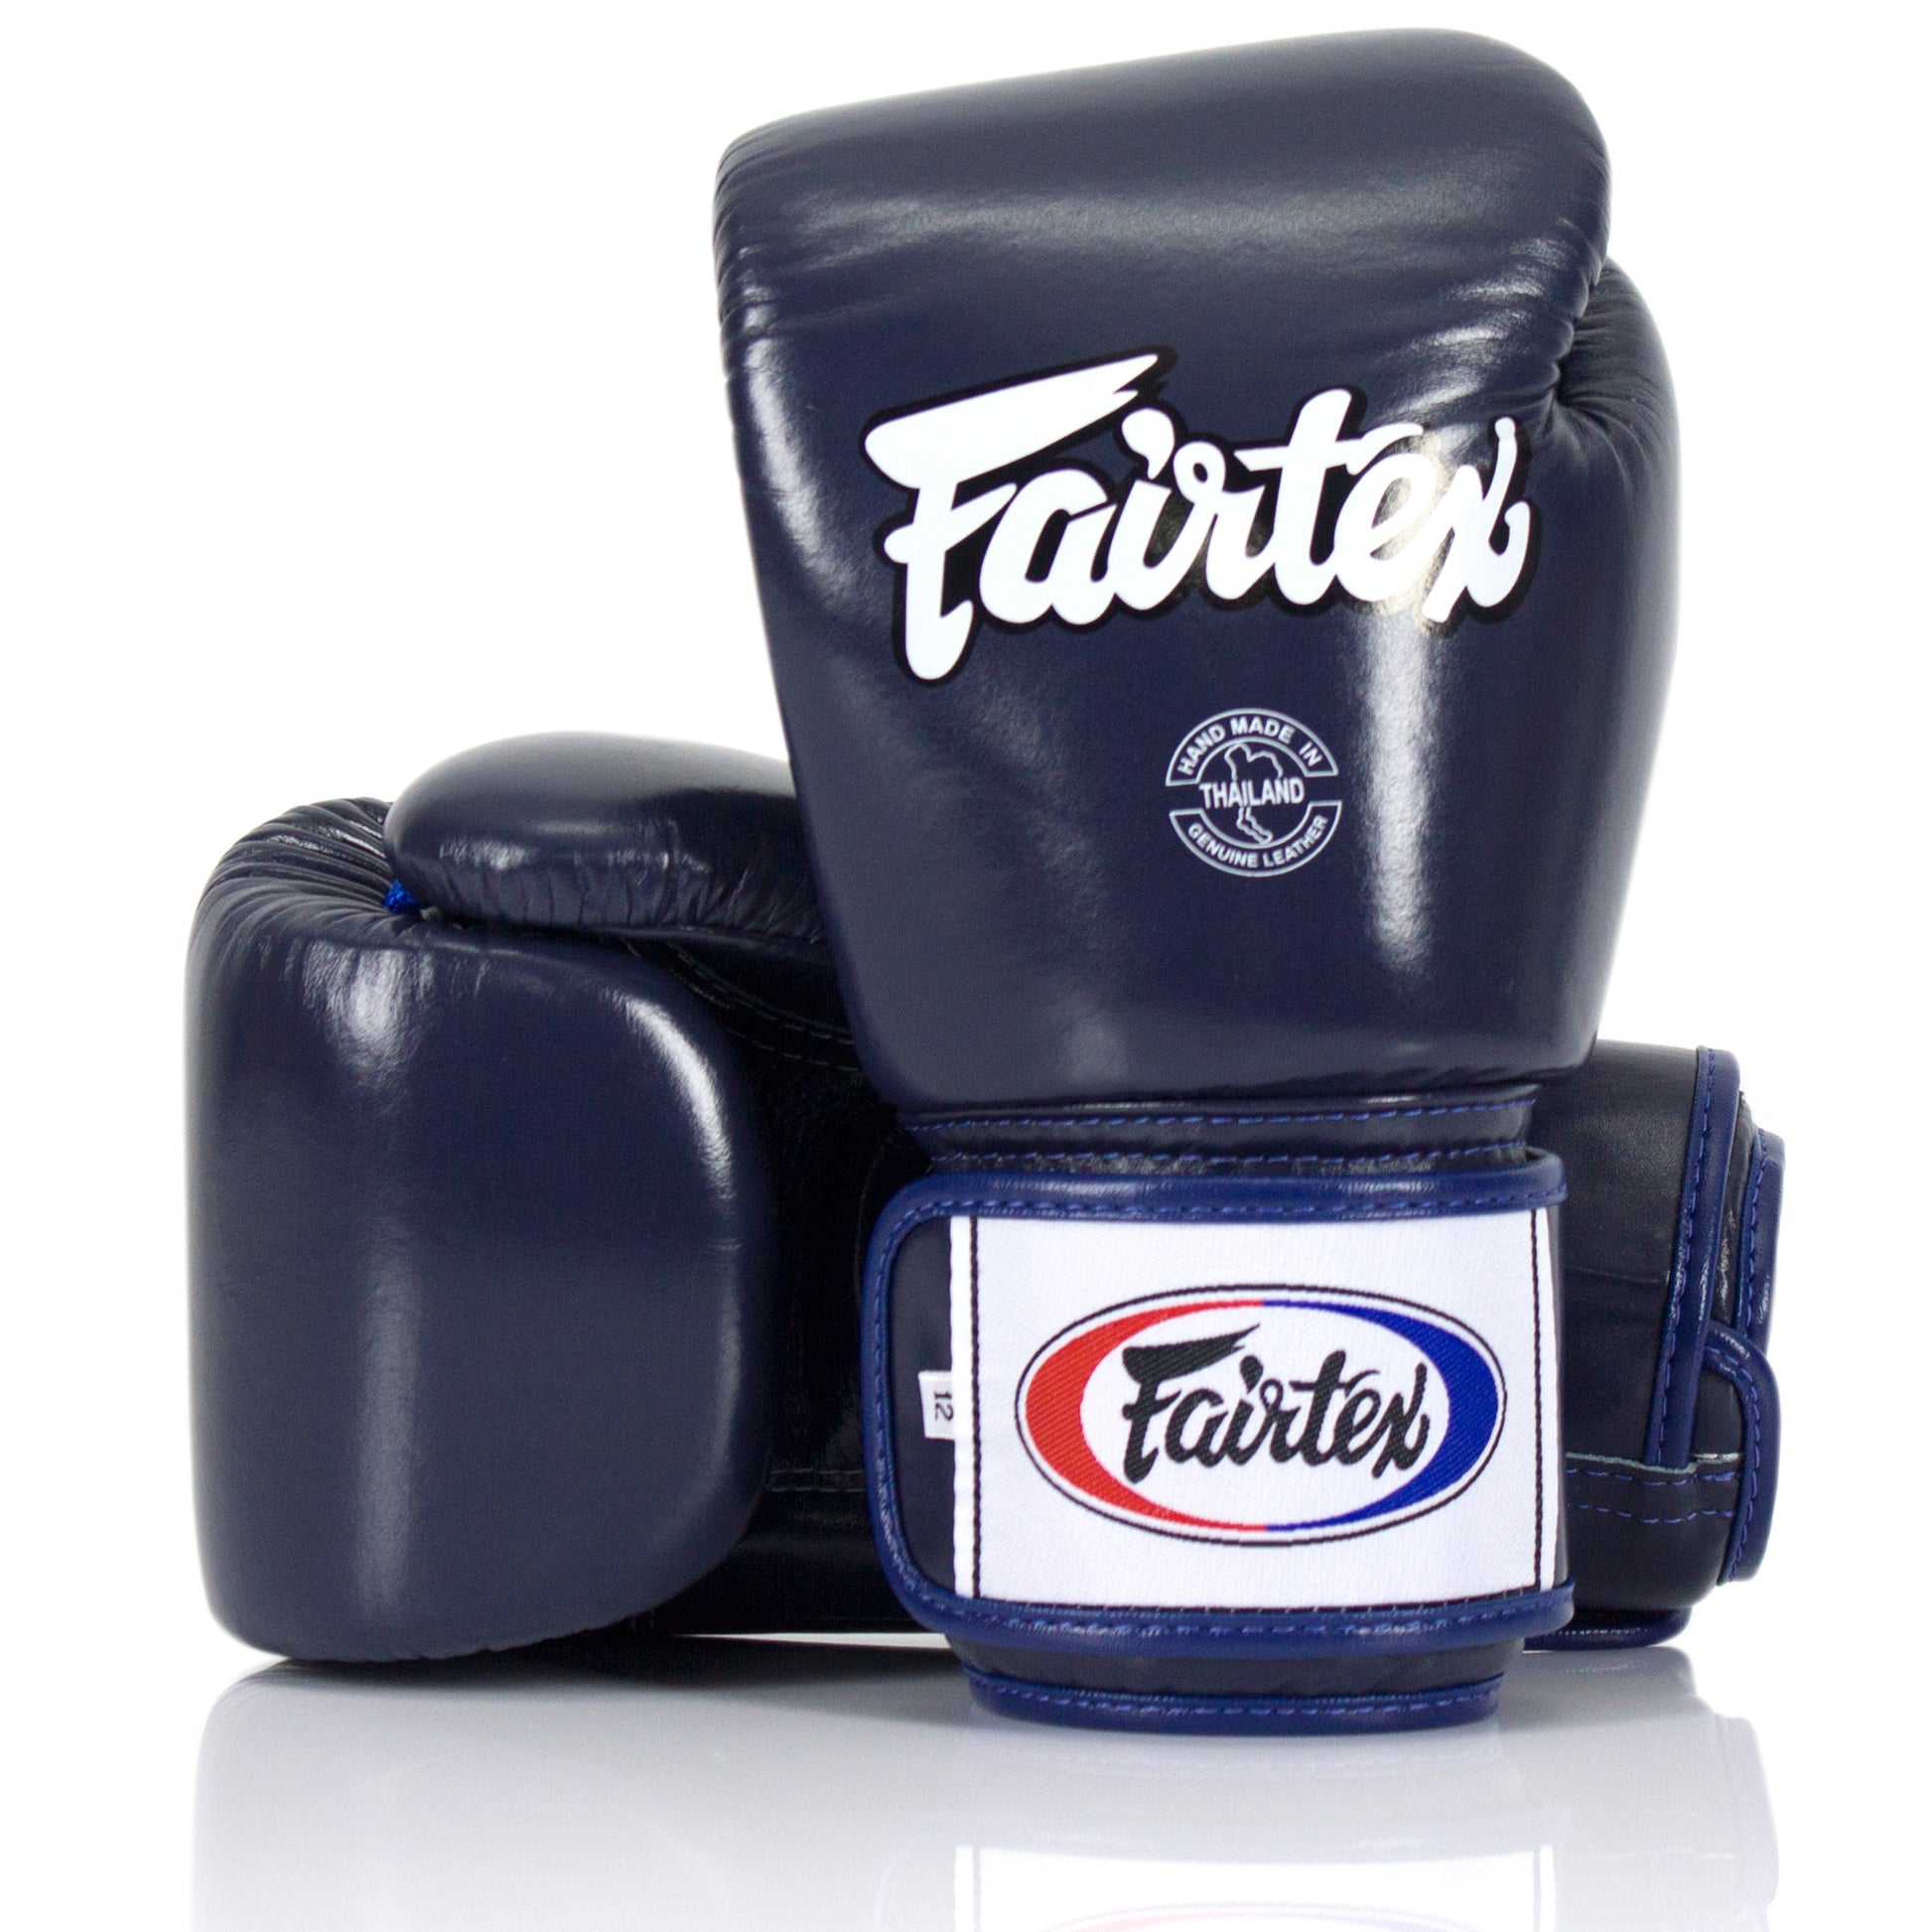 Fairtex Universal Gloves "Tight-Fit" Design - Hatashita